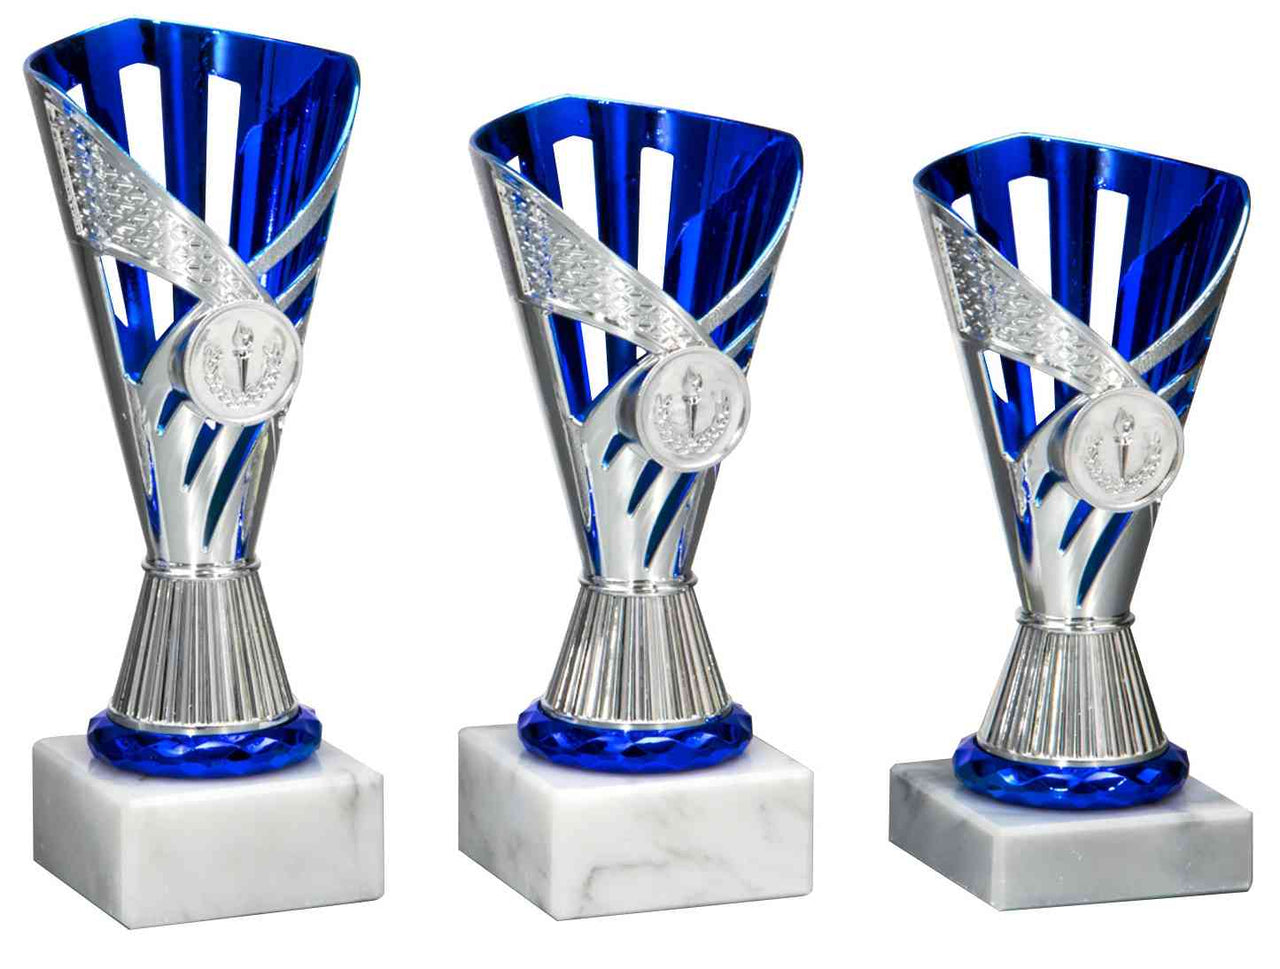 Drei Pokale Herten 3-er Pokalserie 167 mm - 198 mm PK759670-3-E25 von POMEKI mit silbernen Verzierungen auf Marmorsockeln.